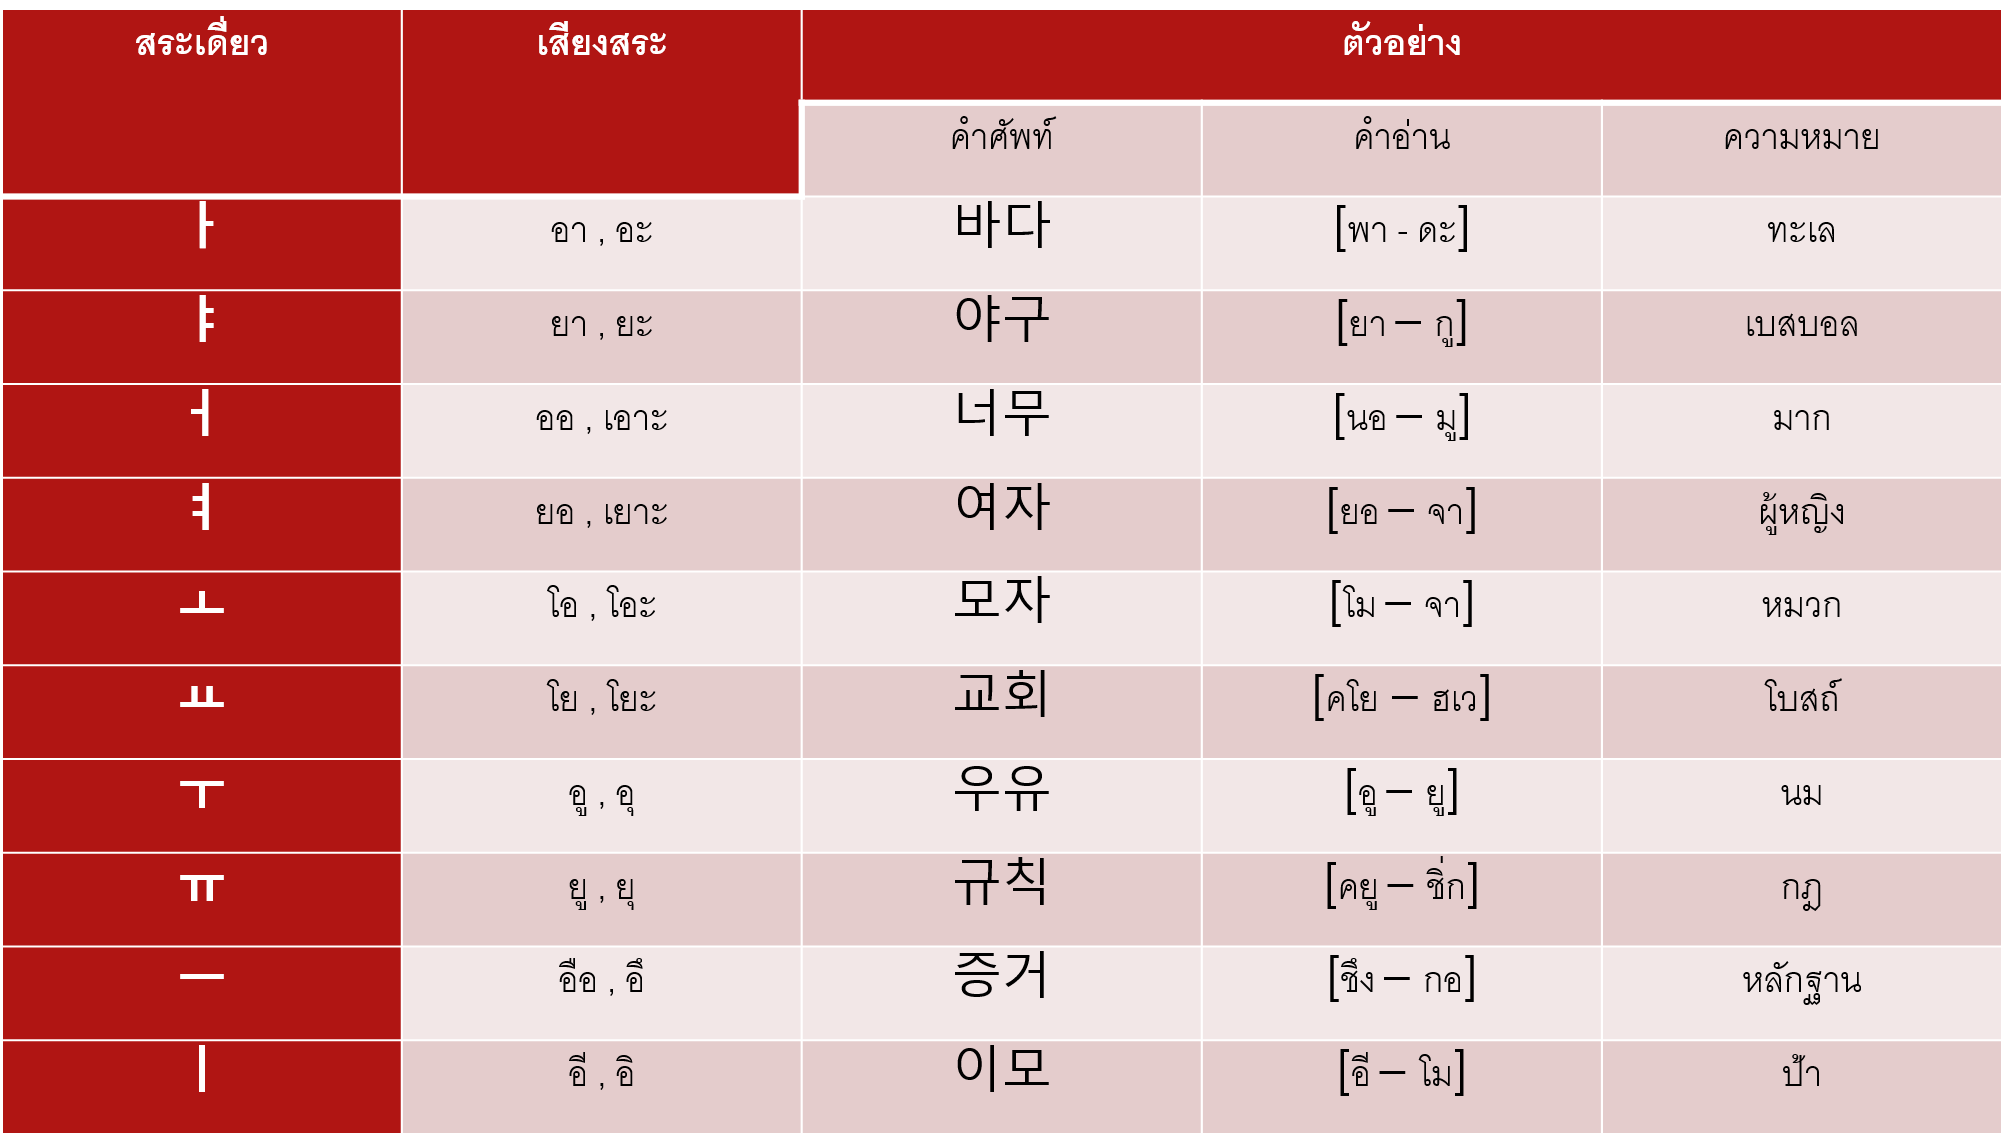 นิยาย มาเรียนภาษาเกาหลีกันเถอะ Let'S Learn Korean > ตอนที่ 2 : สระใน ภาษาเกาหลี : Dek-D.Com – Writer” style=”width:100%” title=”นิยาย มาเรียนภาษาเกาหลีกันเถอะ let’s learn korean > ตอนที่ 2 : สระใน ภาษาเกาหลี : Dek-D.com – Writer”><figcaption>นิยาย มาเรียนภาษาเกาหลีกันเถอะ Let’S Learn Korean > ตอนที่ 2 : สระใน ภาษาเกาหลี : Dek-D.Com – Writer</figcaption></figure>
<figure><img decoding=